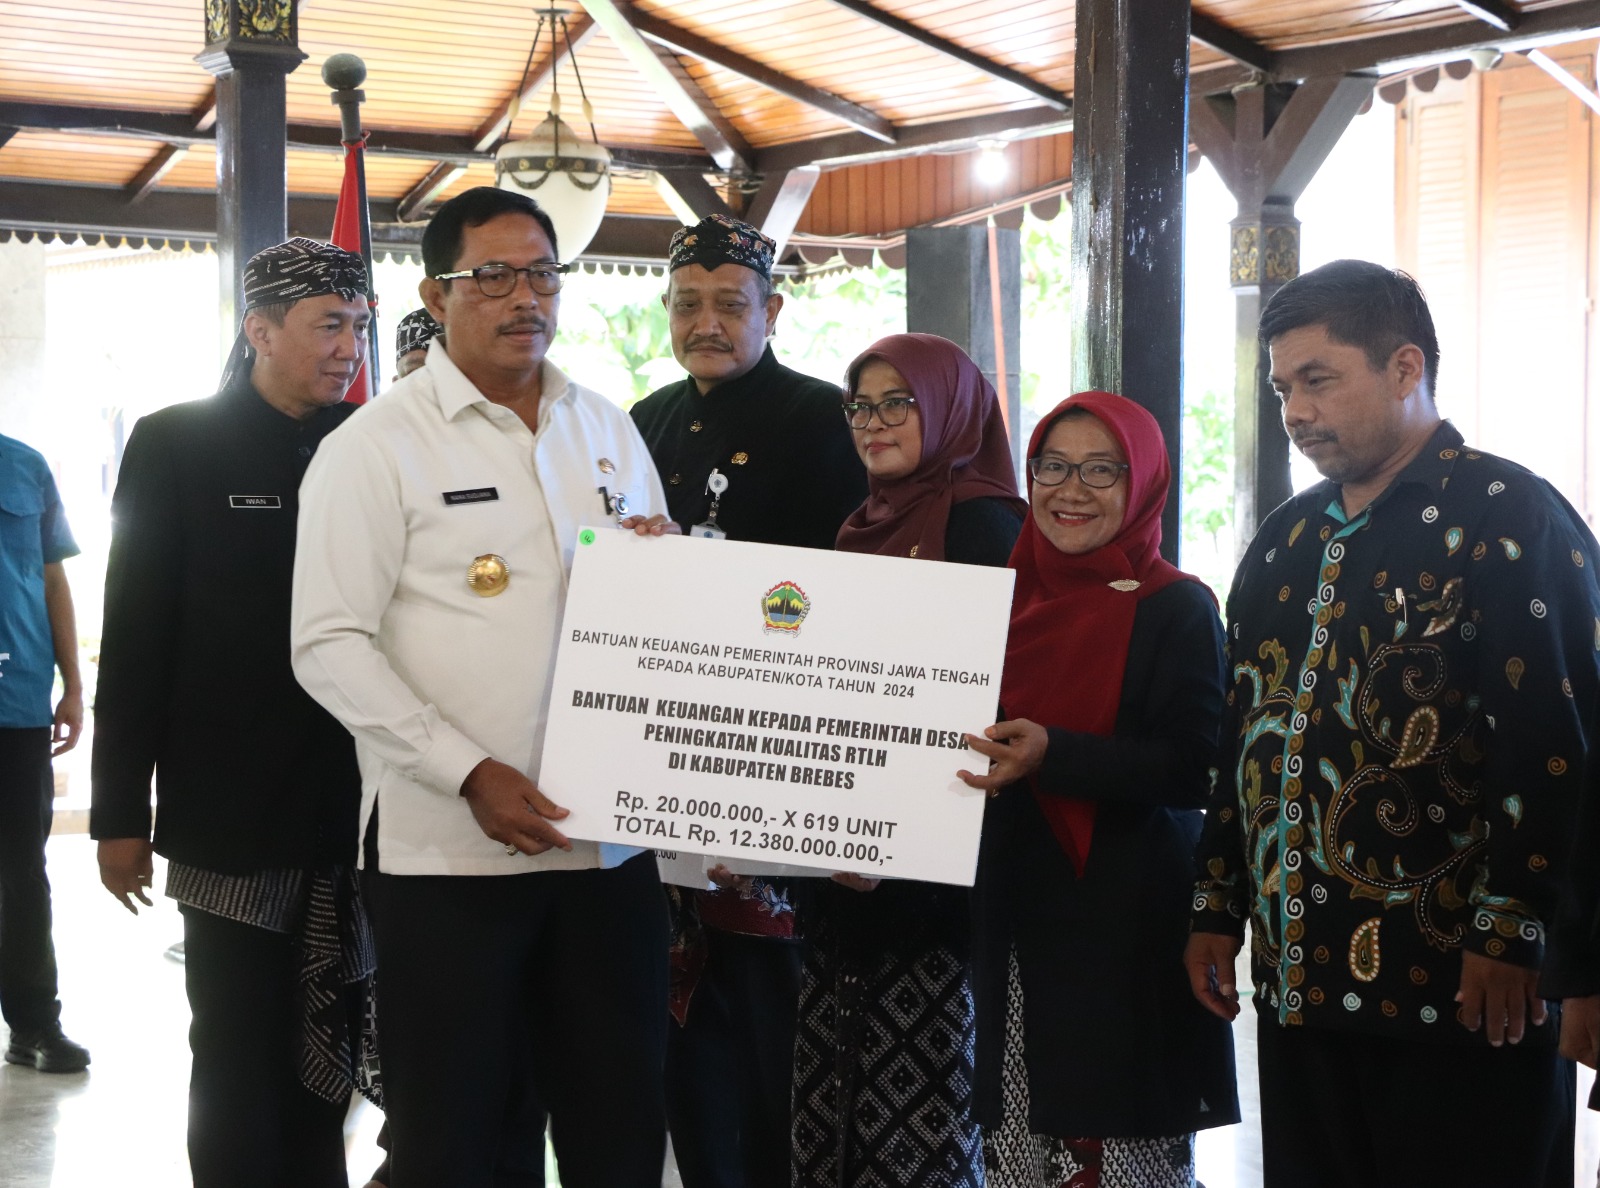 Bantuan Provinsi Jawa Tengah Senilai Rp145,3 Miliar Disalurkan ke Brebes, Ini Prioritasnya